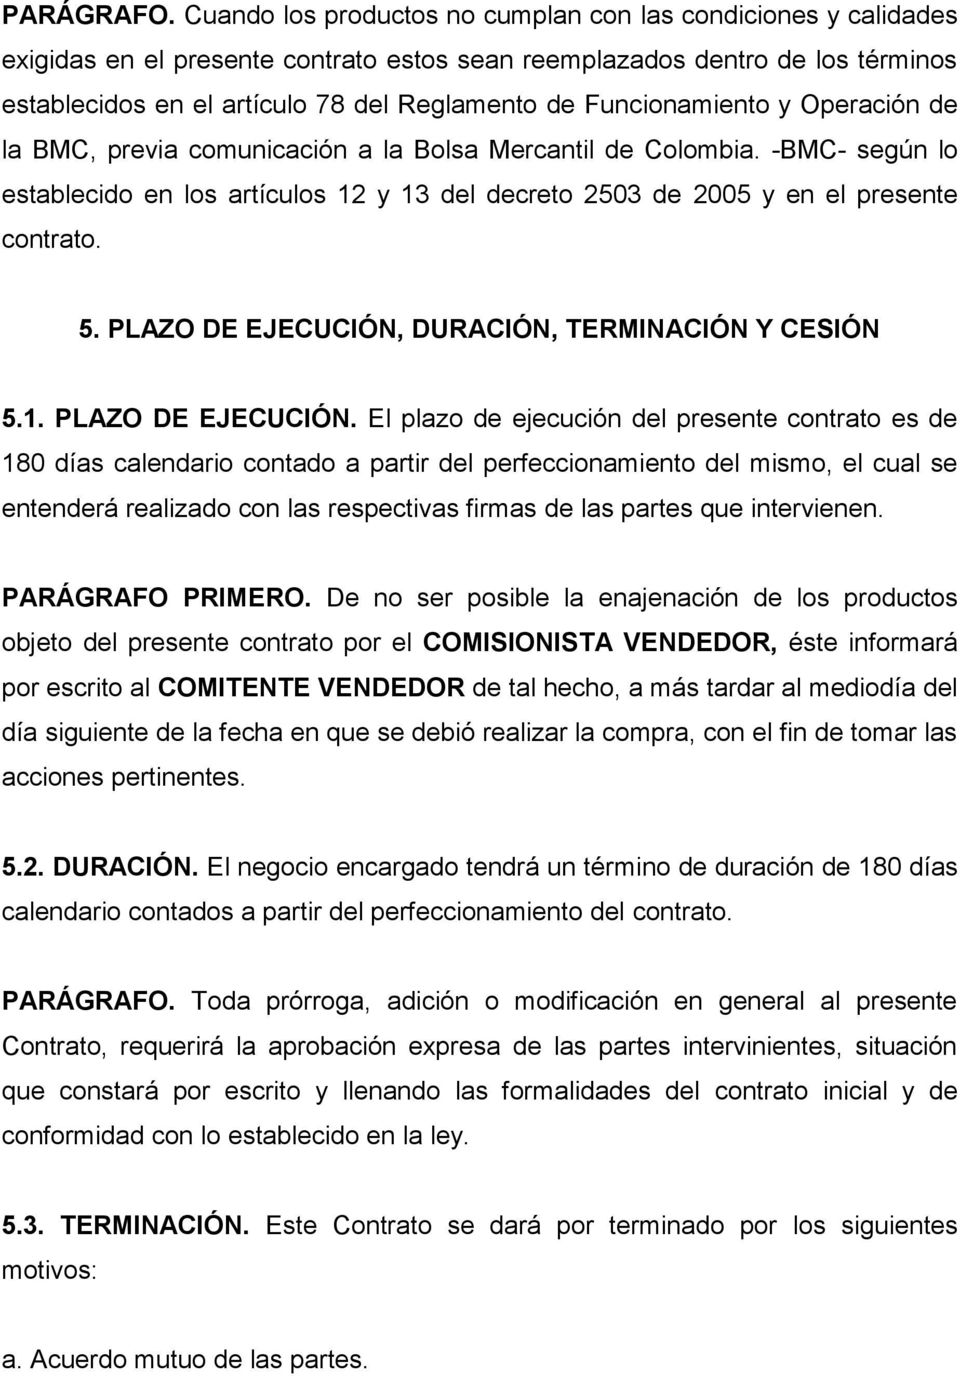 Funcionamiento y Operación de la BMC, previa comunicación a la Bolsa Mercantil de Colombia. -BMC- según lo establecido en los artículos 12 y 13 del decreto 2503 de 2005 y en el presente contrato. 5.